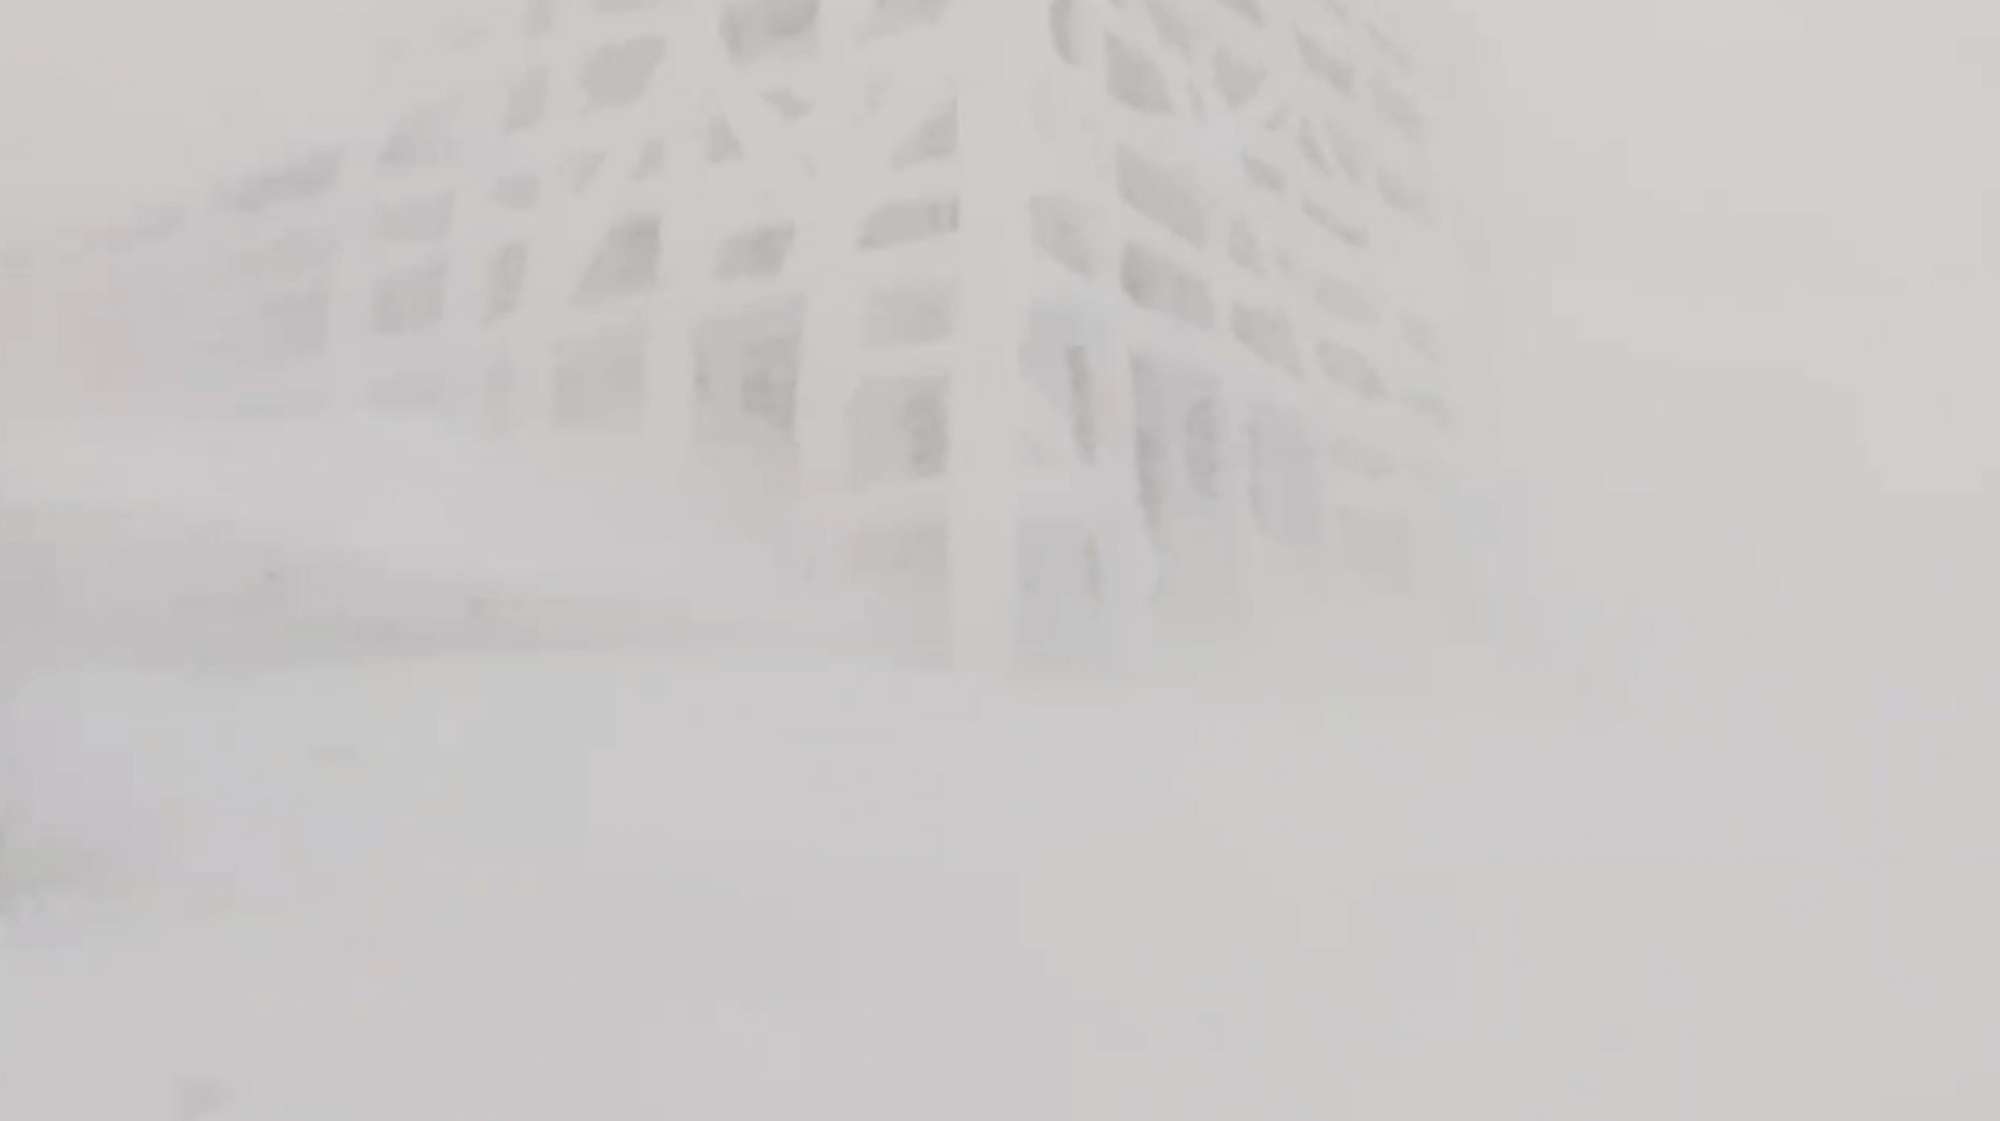 Поп Иван Черногорский в снежной ловушке: спасатели призвали не ходить в горы в ближайшие дни. Видео